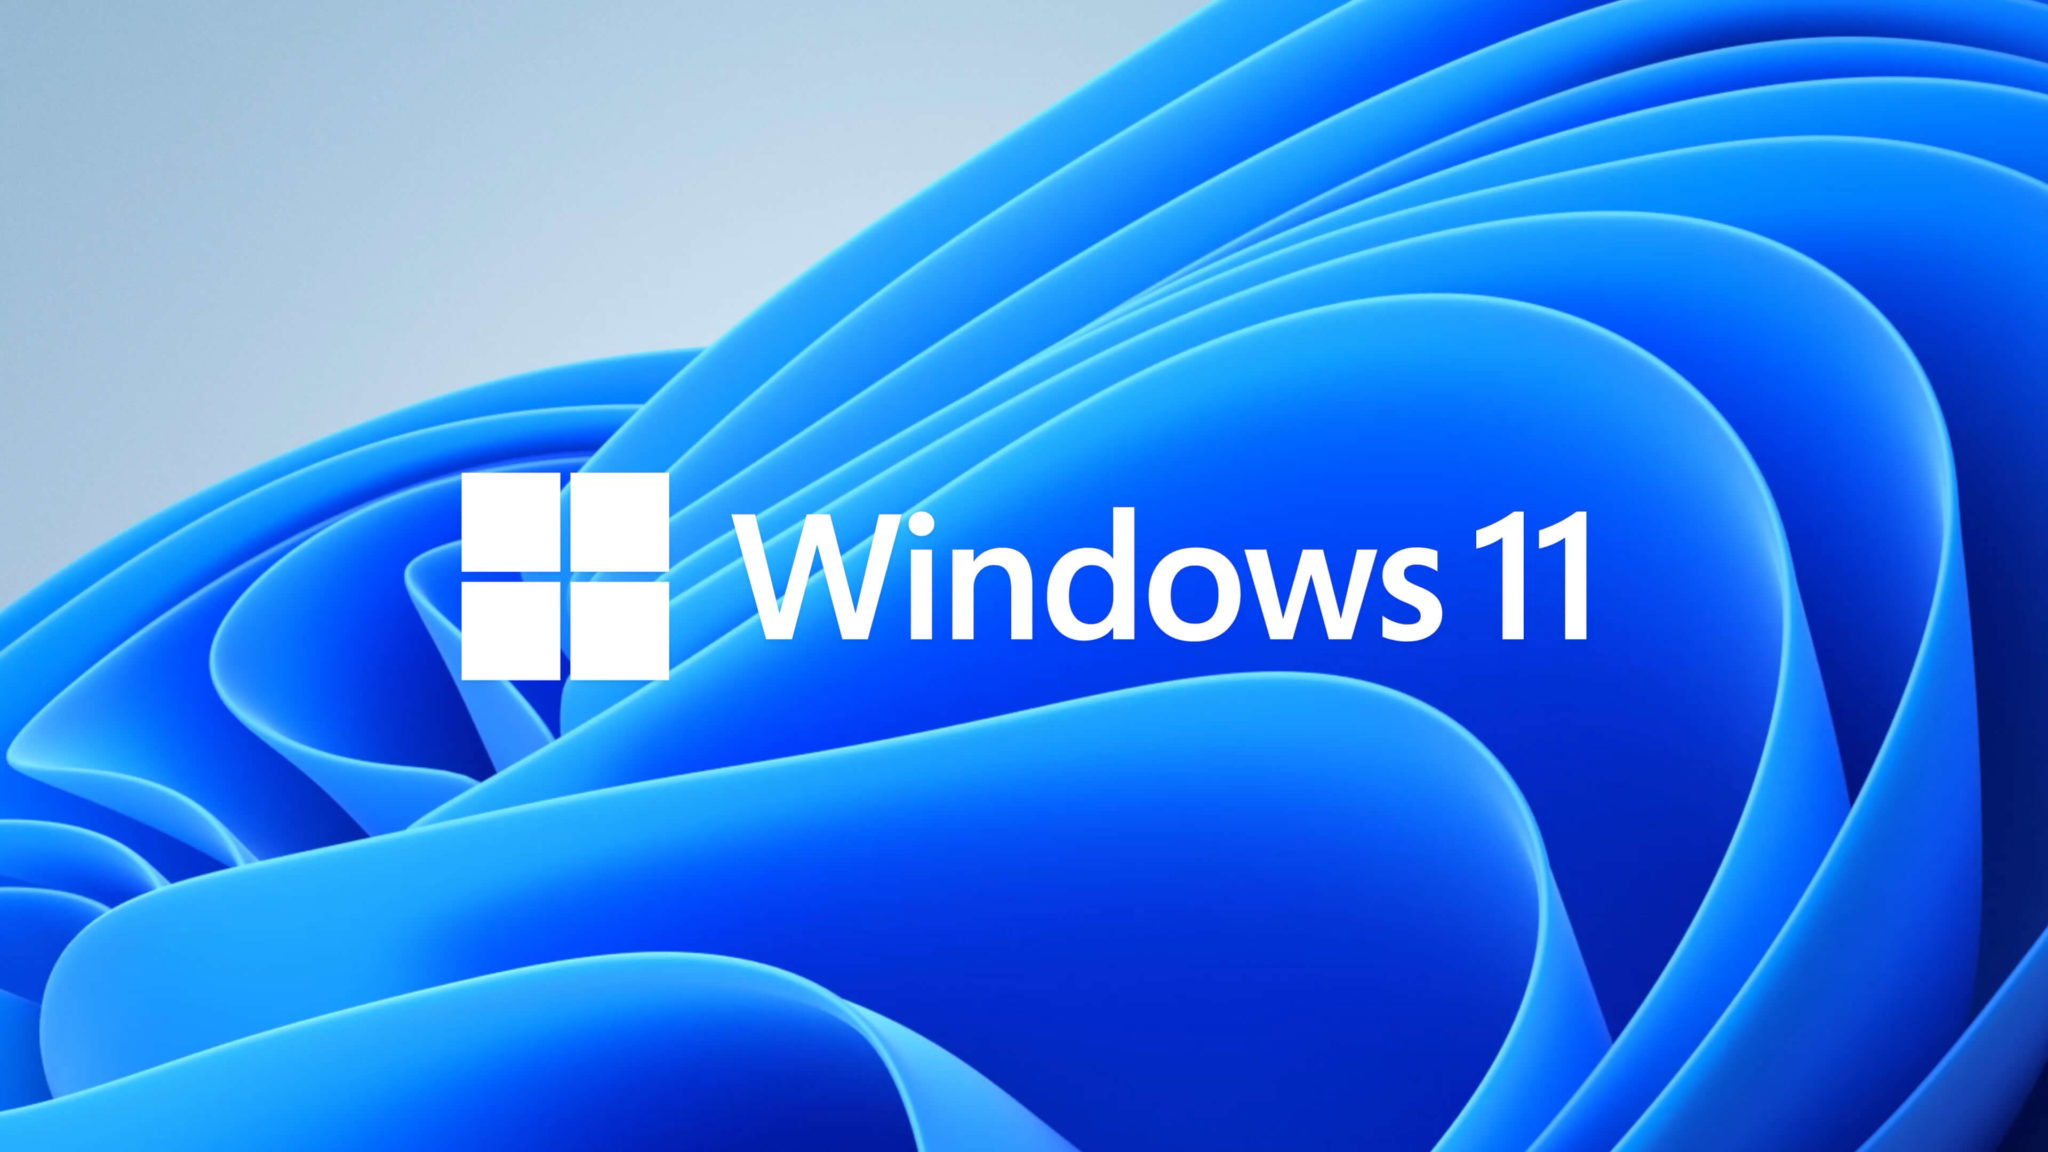 Windows 11 можно будет установить на устаревшие компьютеры, - Microsoft